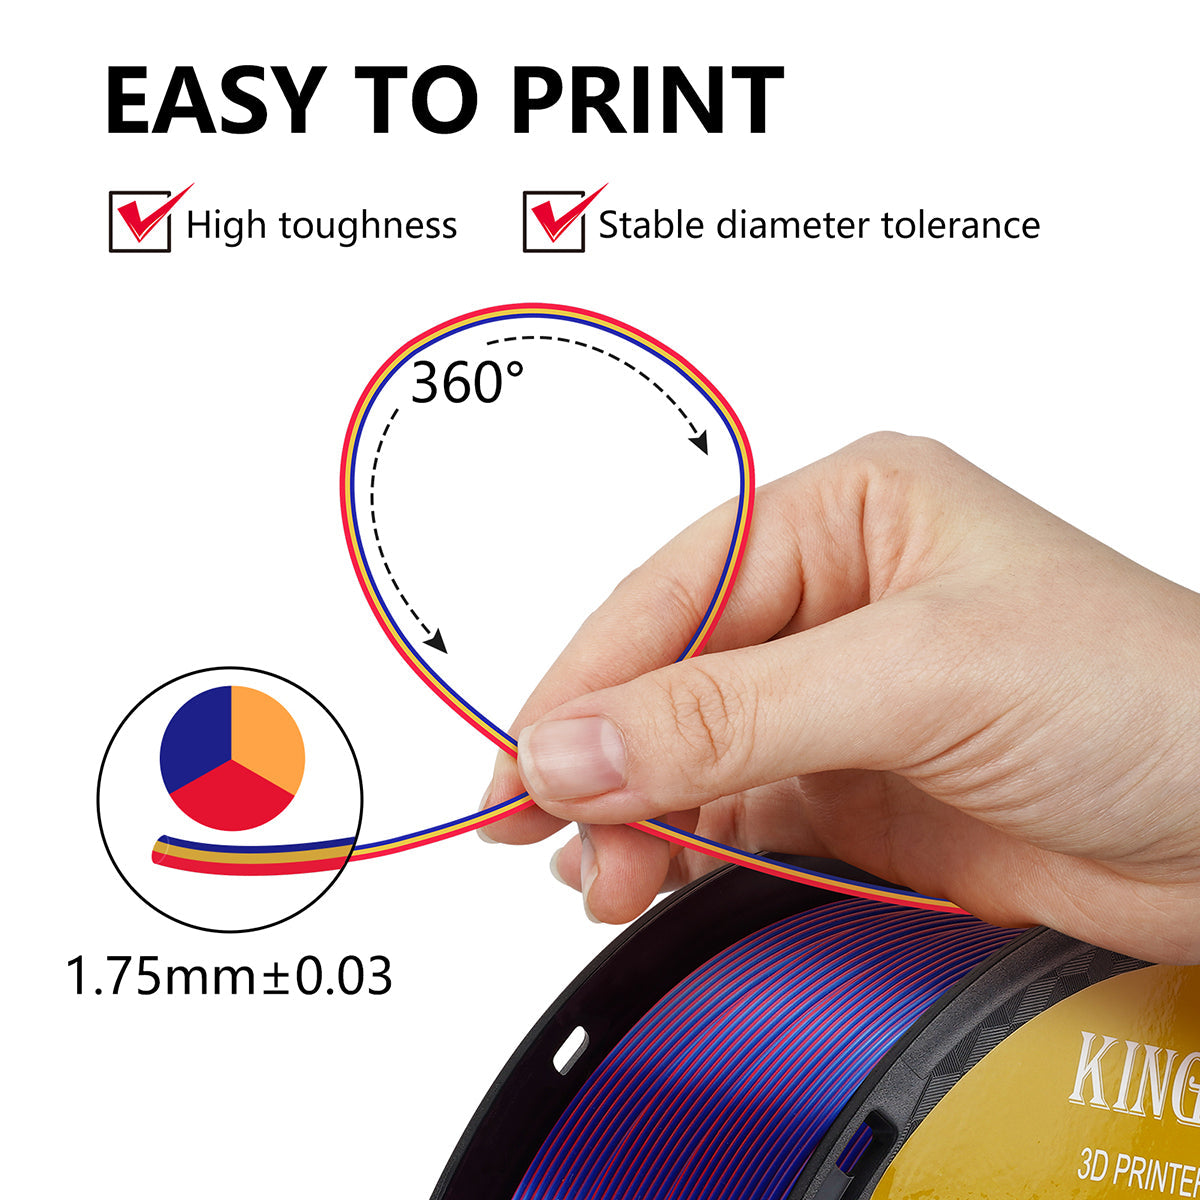 【2KG Pack】Tri-Color Silk PLA Filament - Red / Golden / Blue